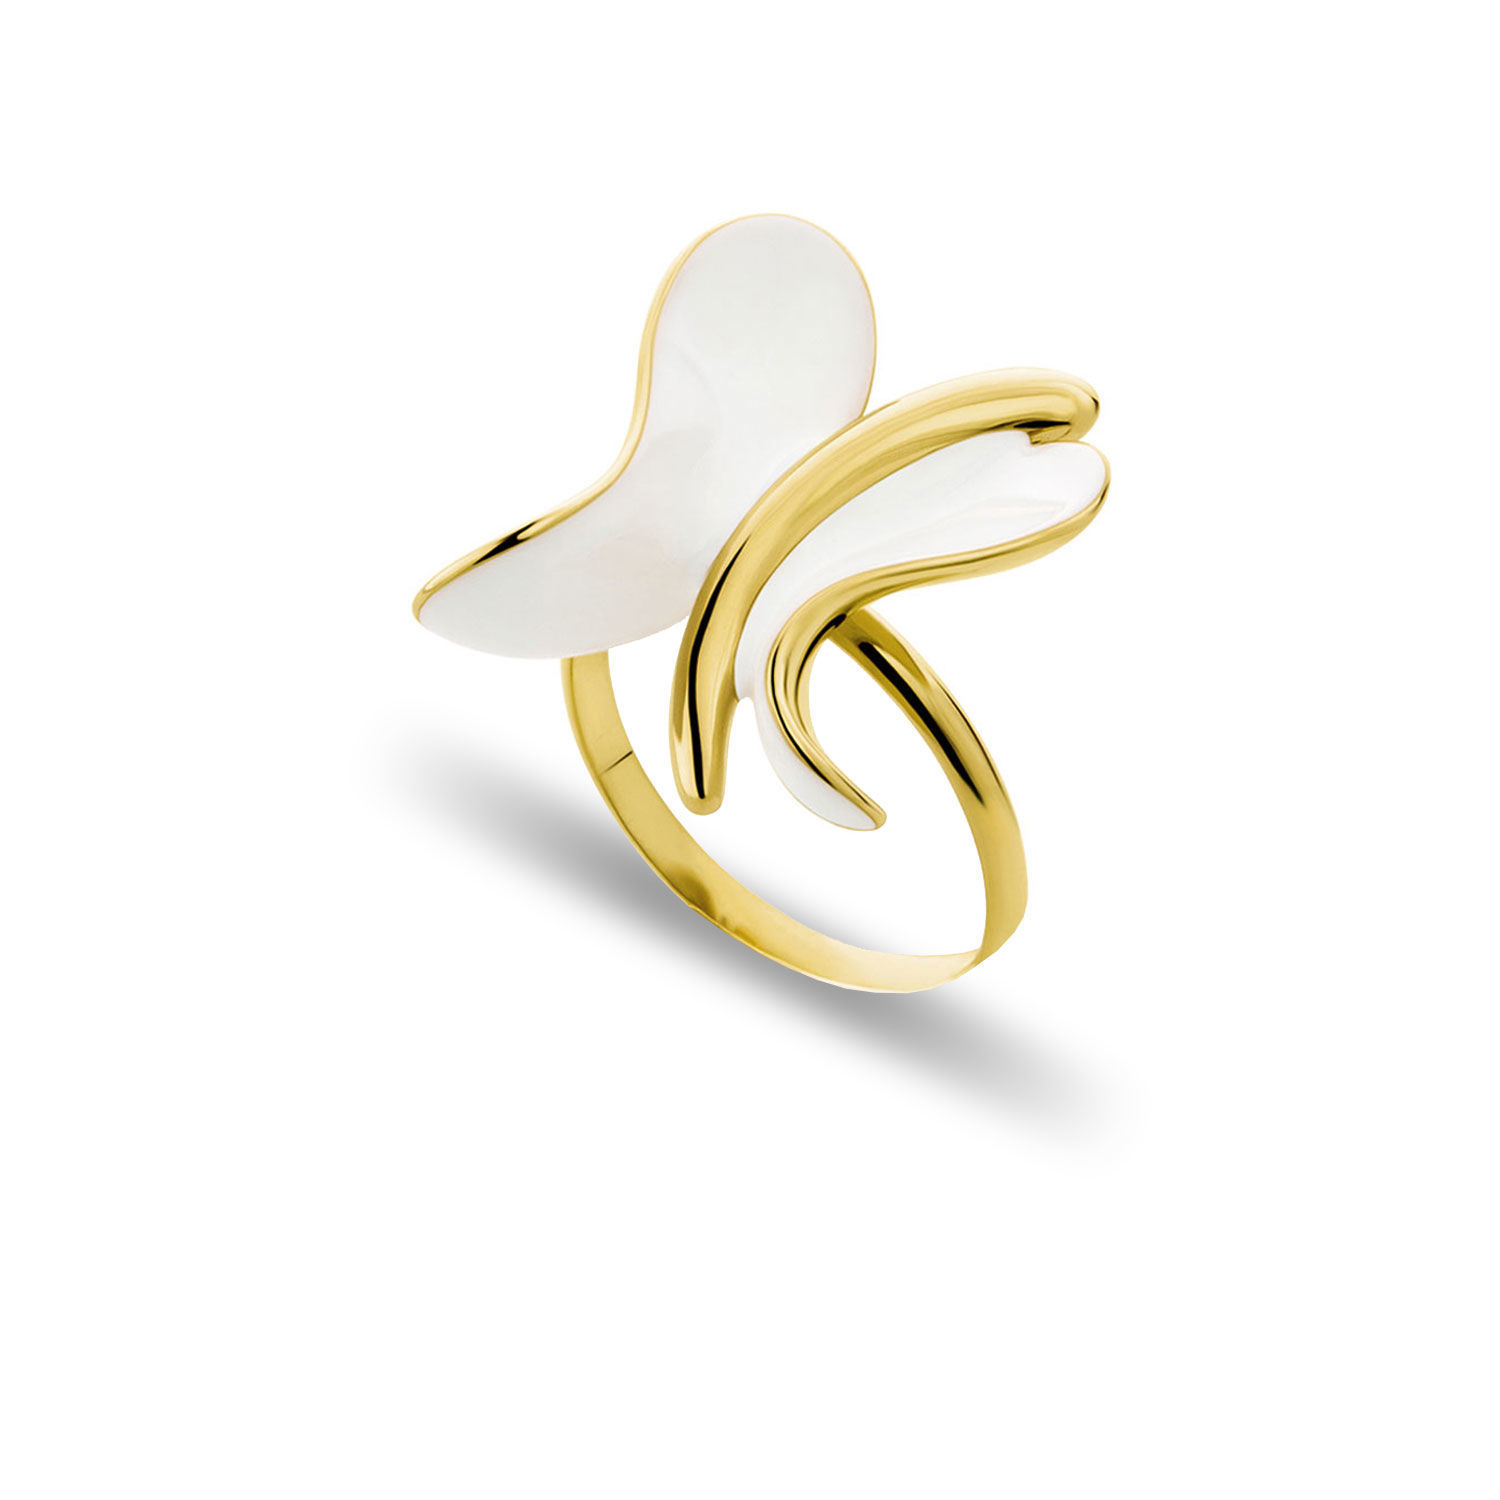 Δαχτυλίδι Artisanal Πεταλούδα από επιχρυσωμένο ασήμι 925° και λευκό σμάλτο